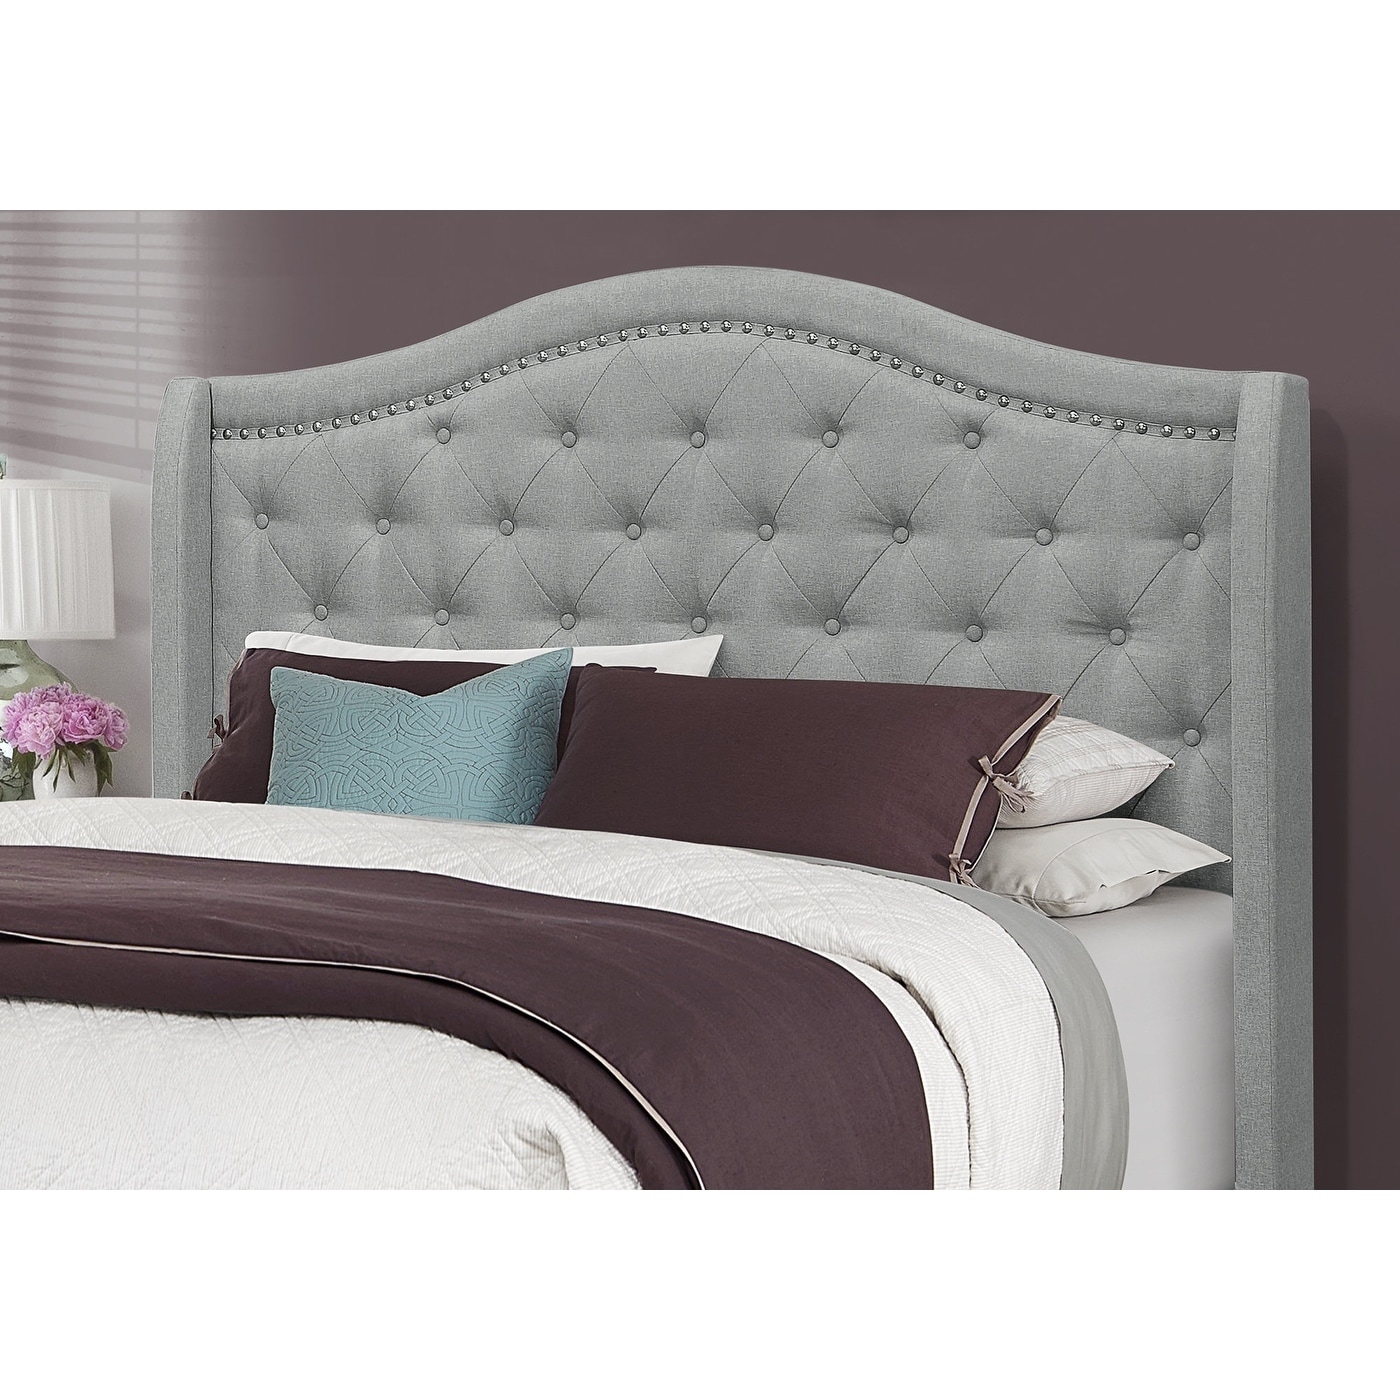 Bed, Queen Size, Platform, Bedroom, Frame, Upholste Velvet, Wood Legs, Chrome, Traditional